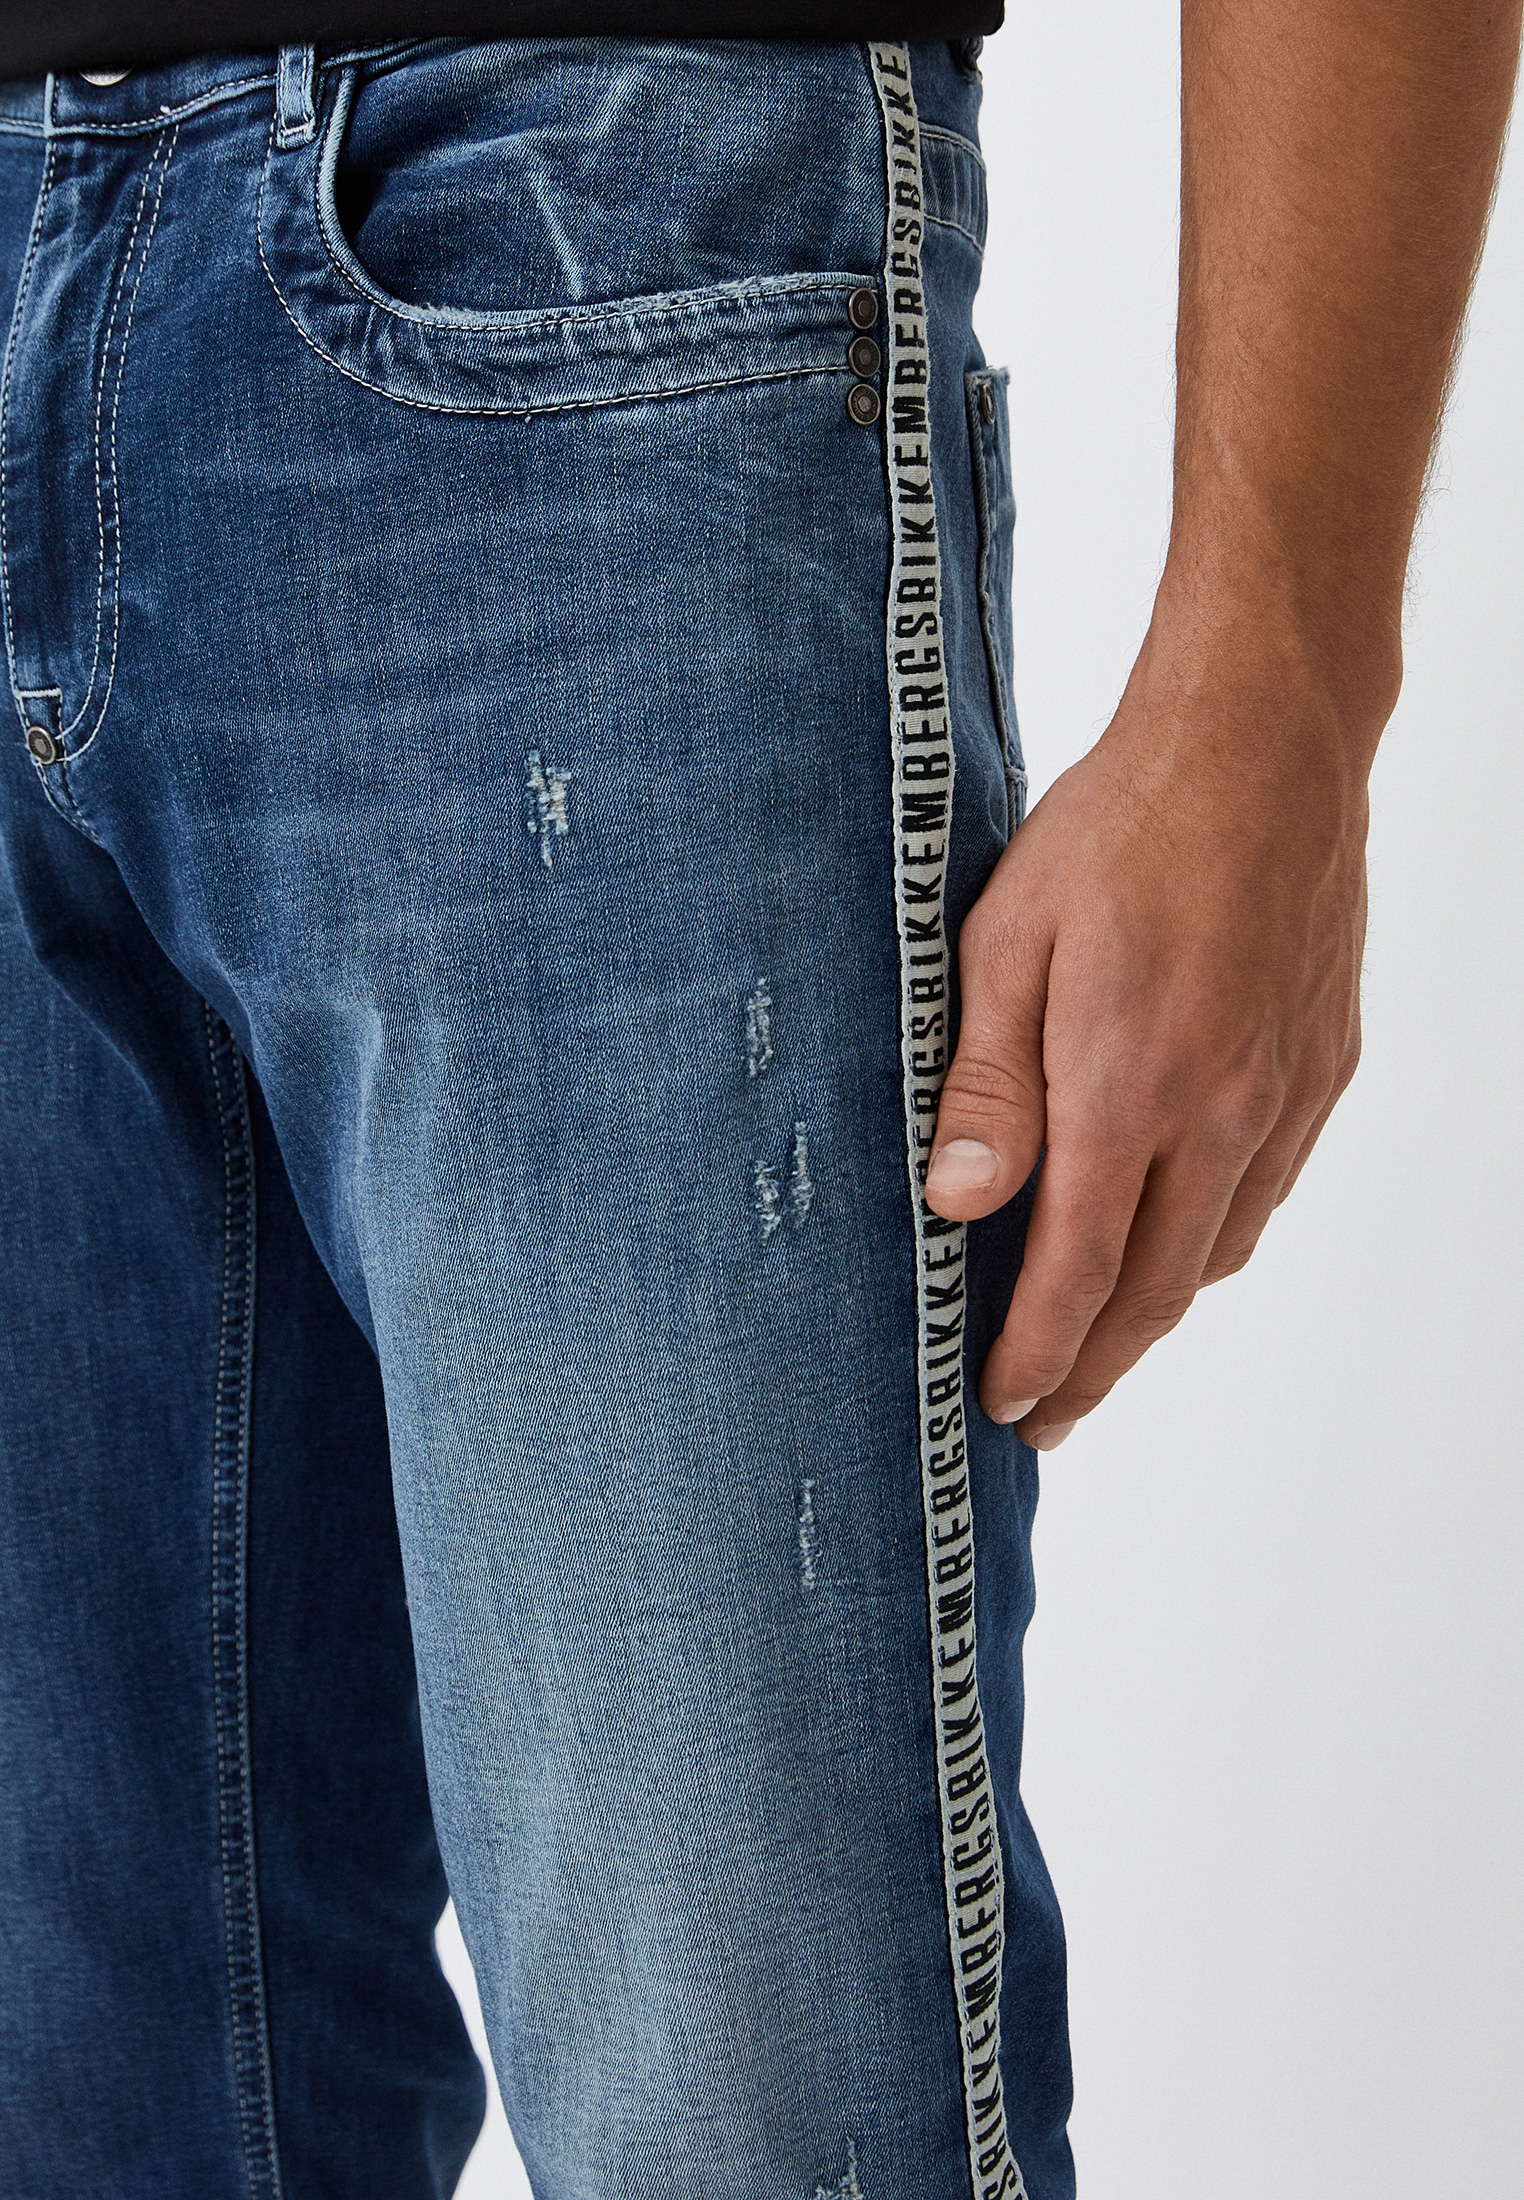 Мужские зауженные джинсы Bikkembergs (Биккембергс) C Q 101 1A S 3511: изображение 4